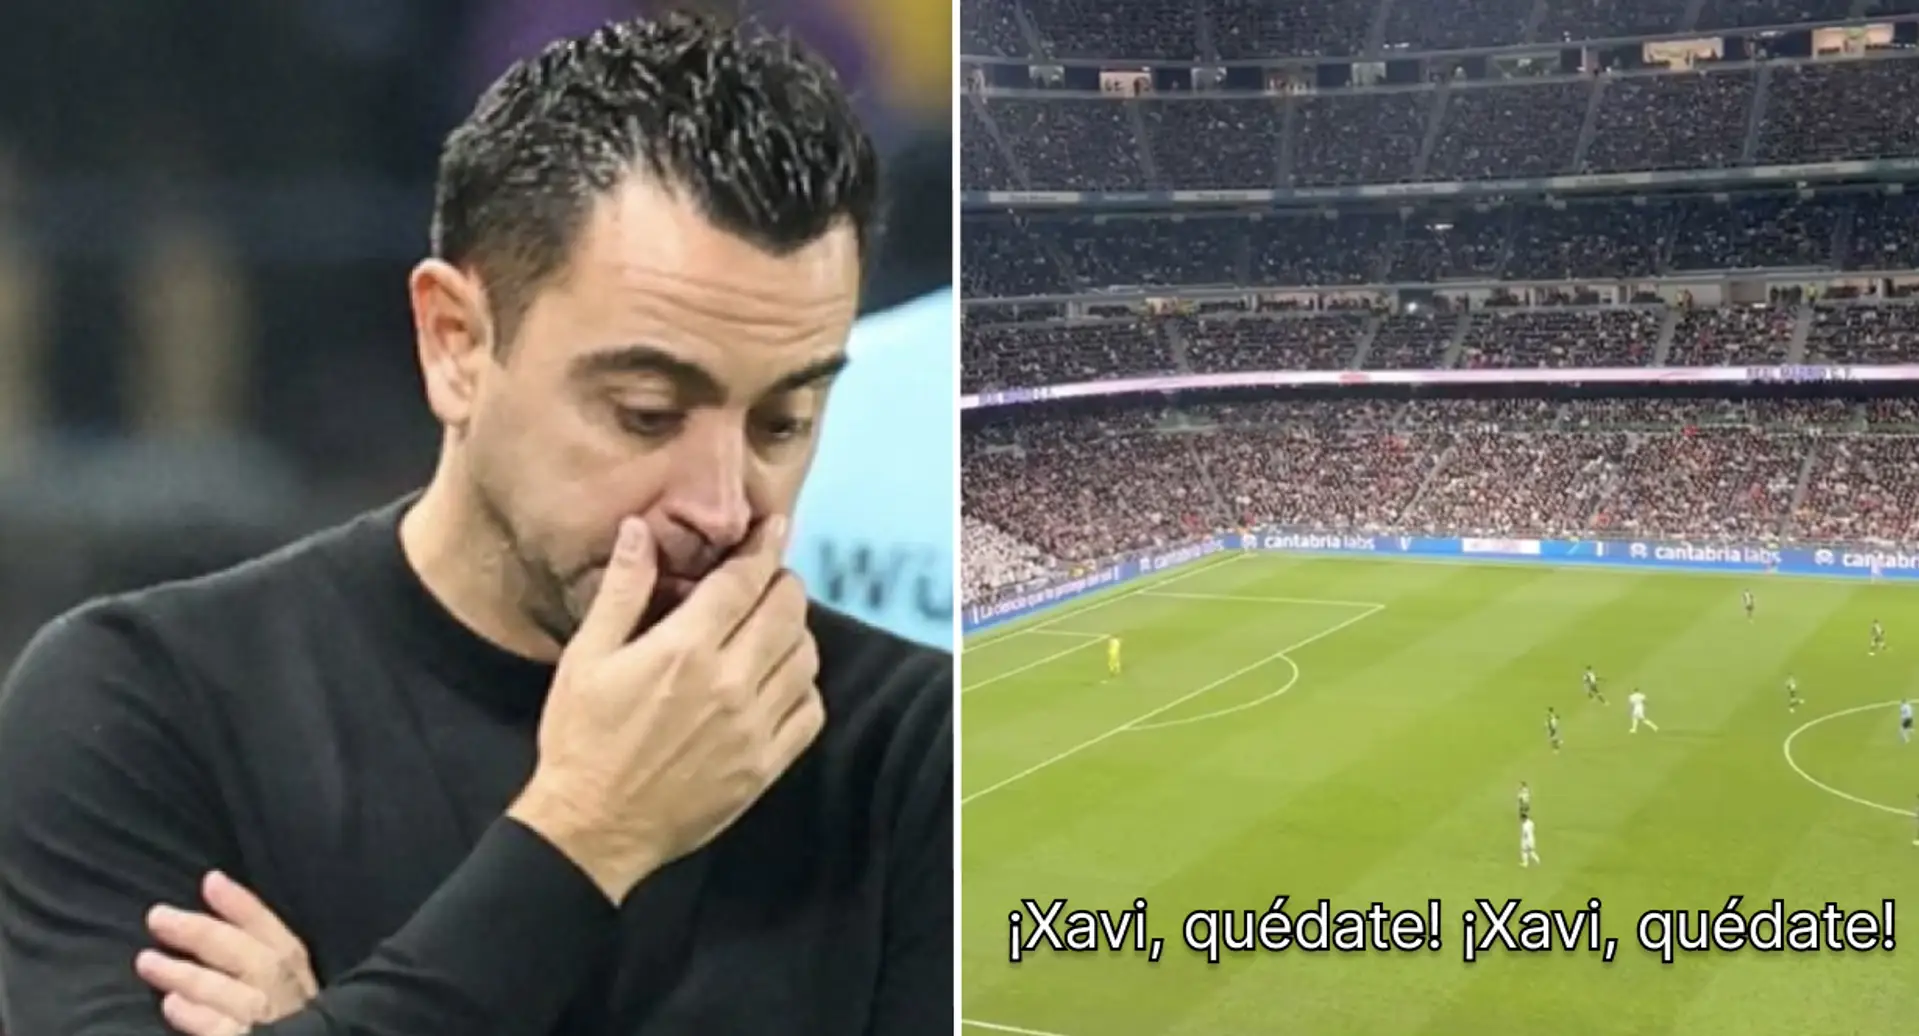 Real Madrid fans seemingly mock Xavi with chants at Bernabeu (video)